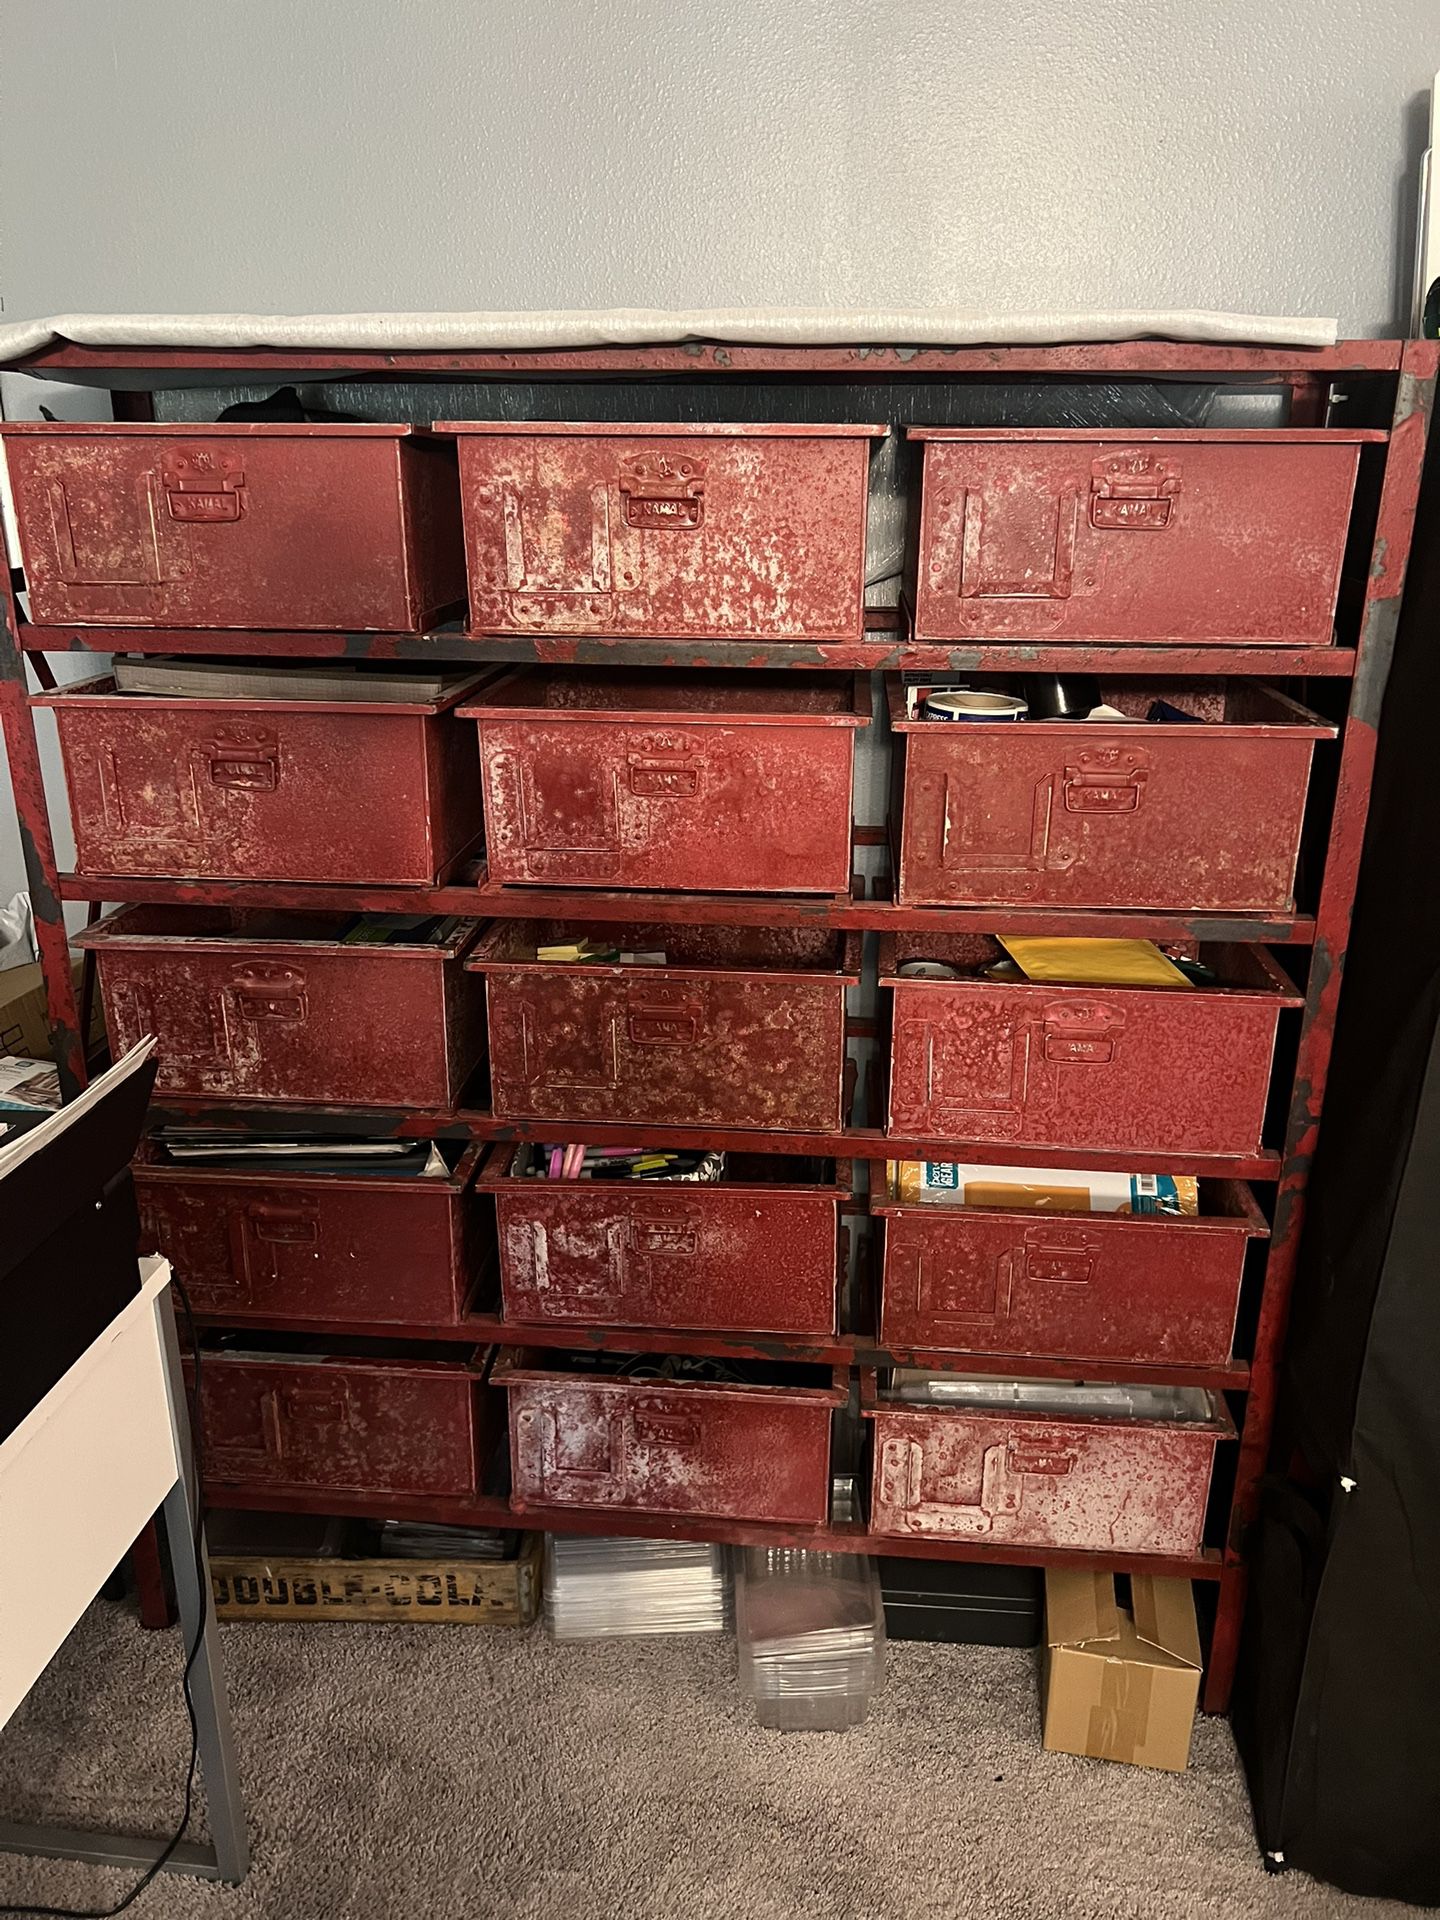 Pier 1 Storage Shelf Cabinet Red Drawers chest